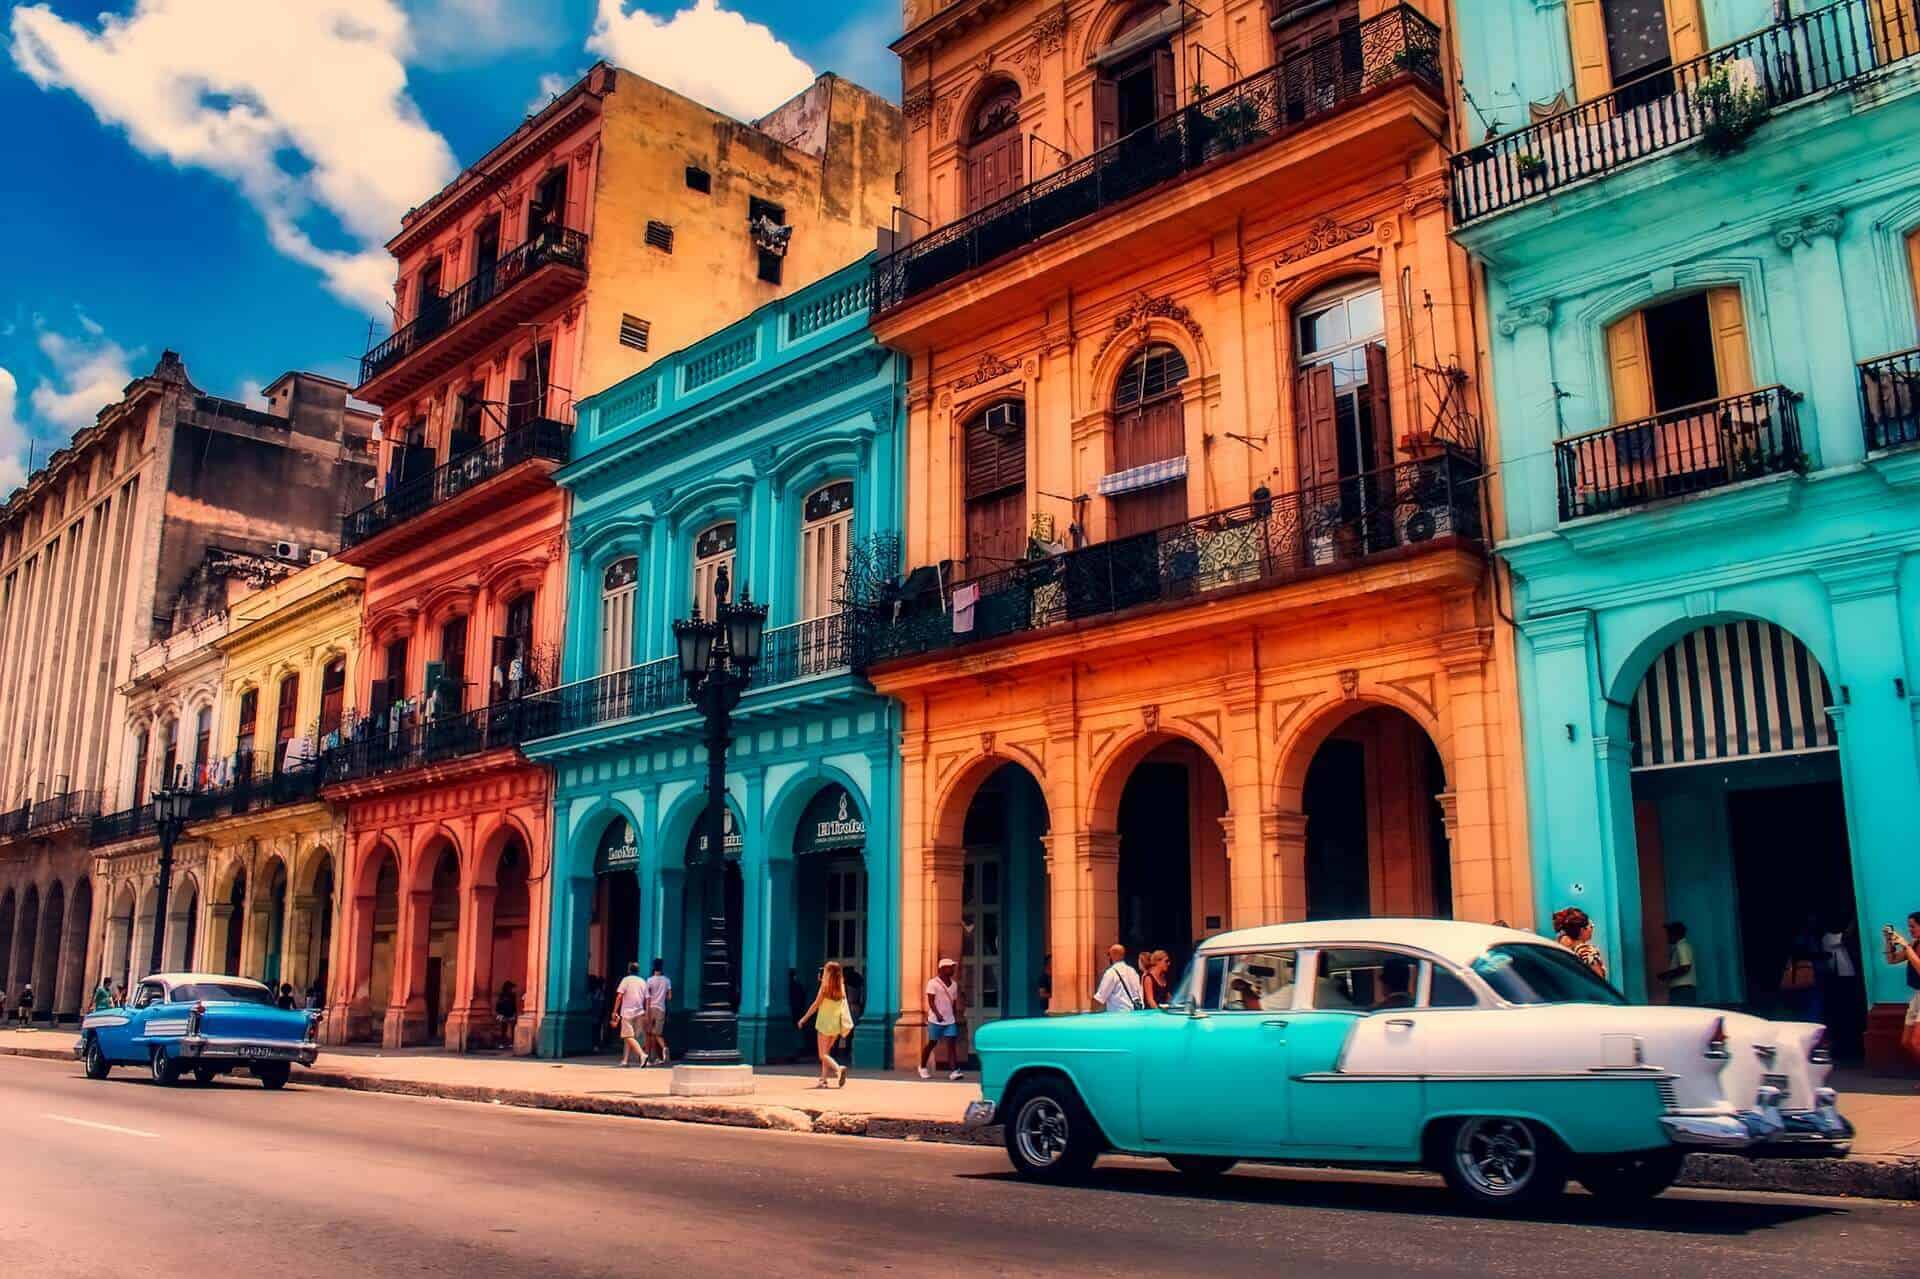 Voyage en amoureux à Cuba : 4 endroits romantiques à découvrir